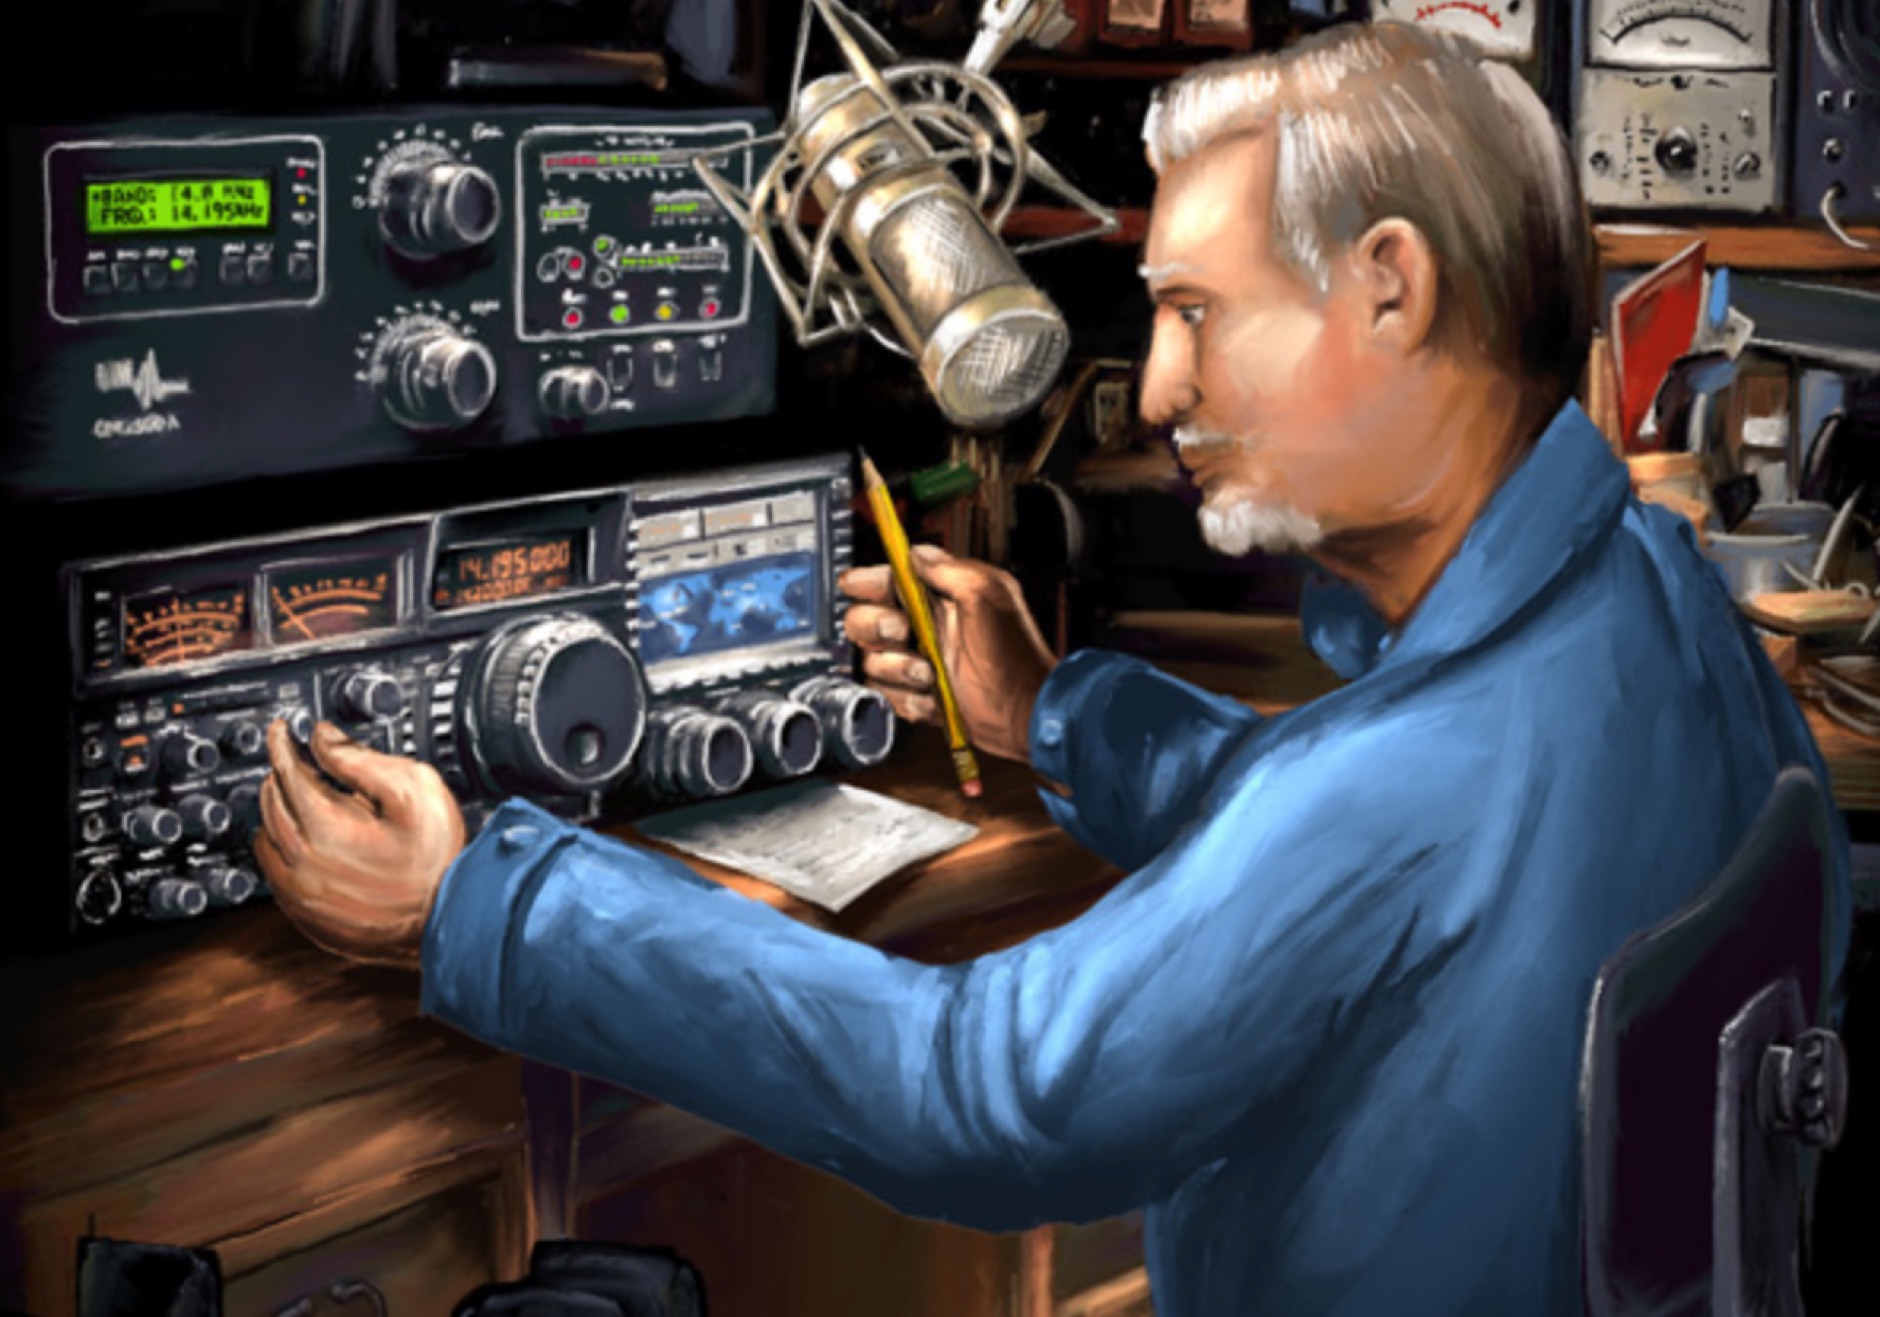 satellite Amateur equipment radio